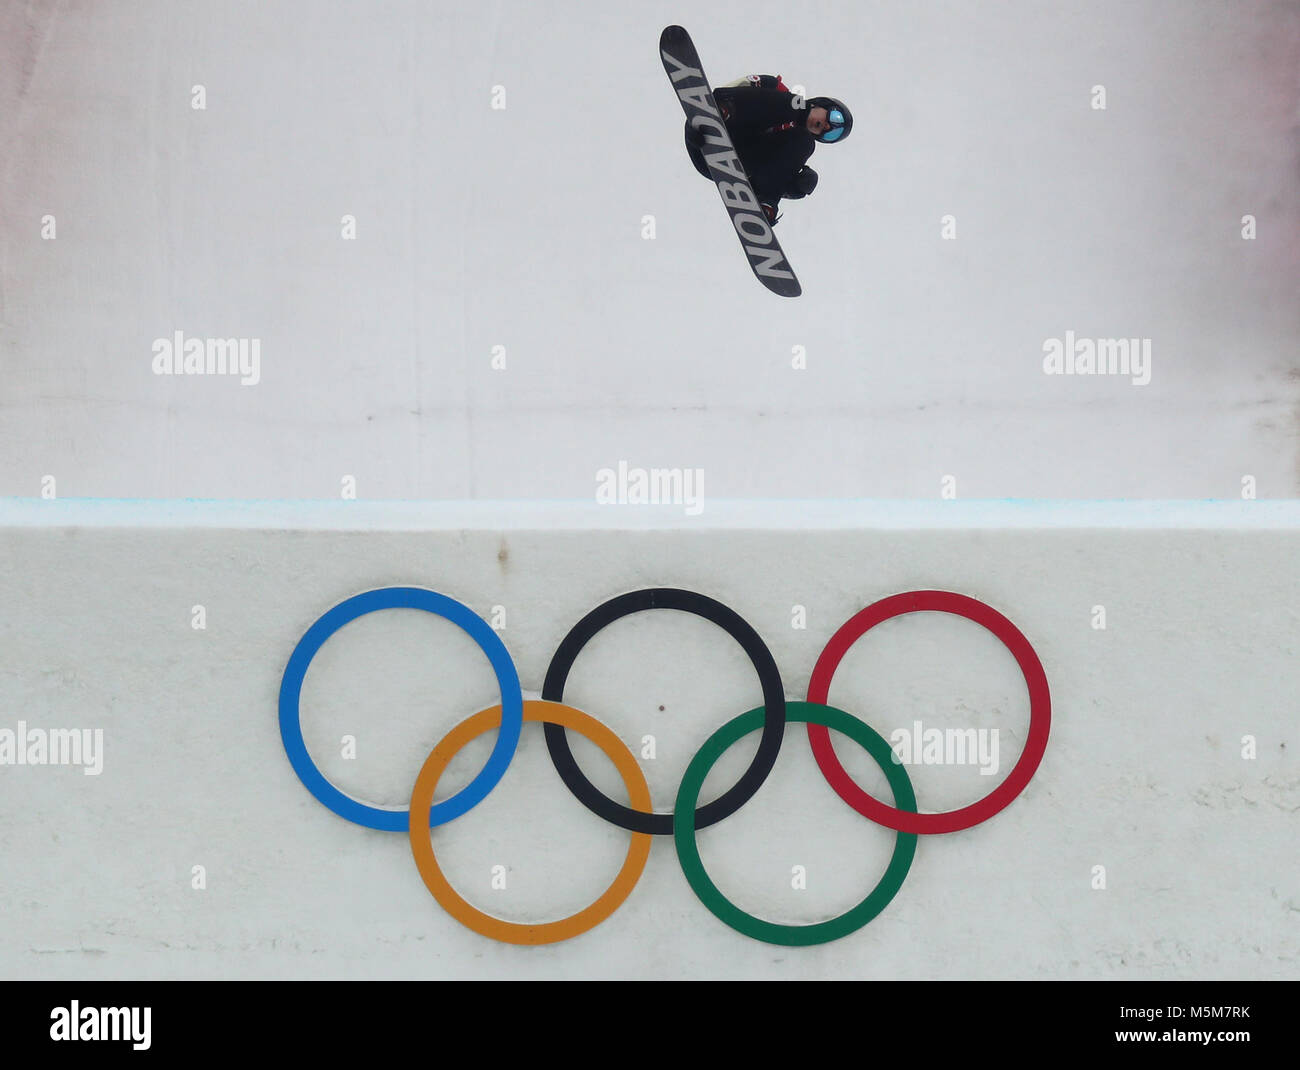 Pyeongchang, Corée du Sud. Feb 24, 2018. Perroquet Max à partir du Canada effectue une pirouette au cours de la finale de Snowboard Big Air à Pyeongchang, Corée du Sud, 24 février 2018. Crédit : Daniel Karmann/dpa/Alamy Live News Banque D'Images